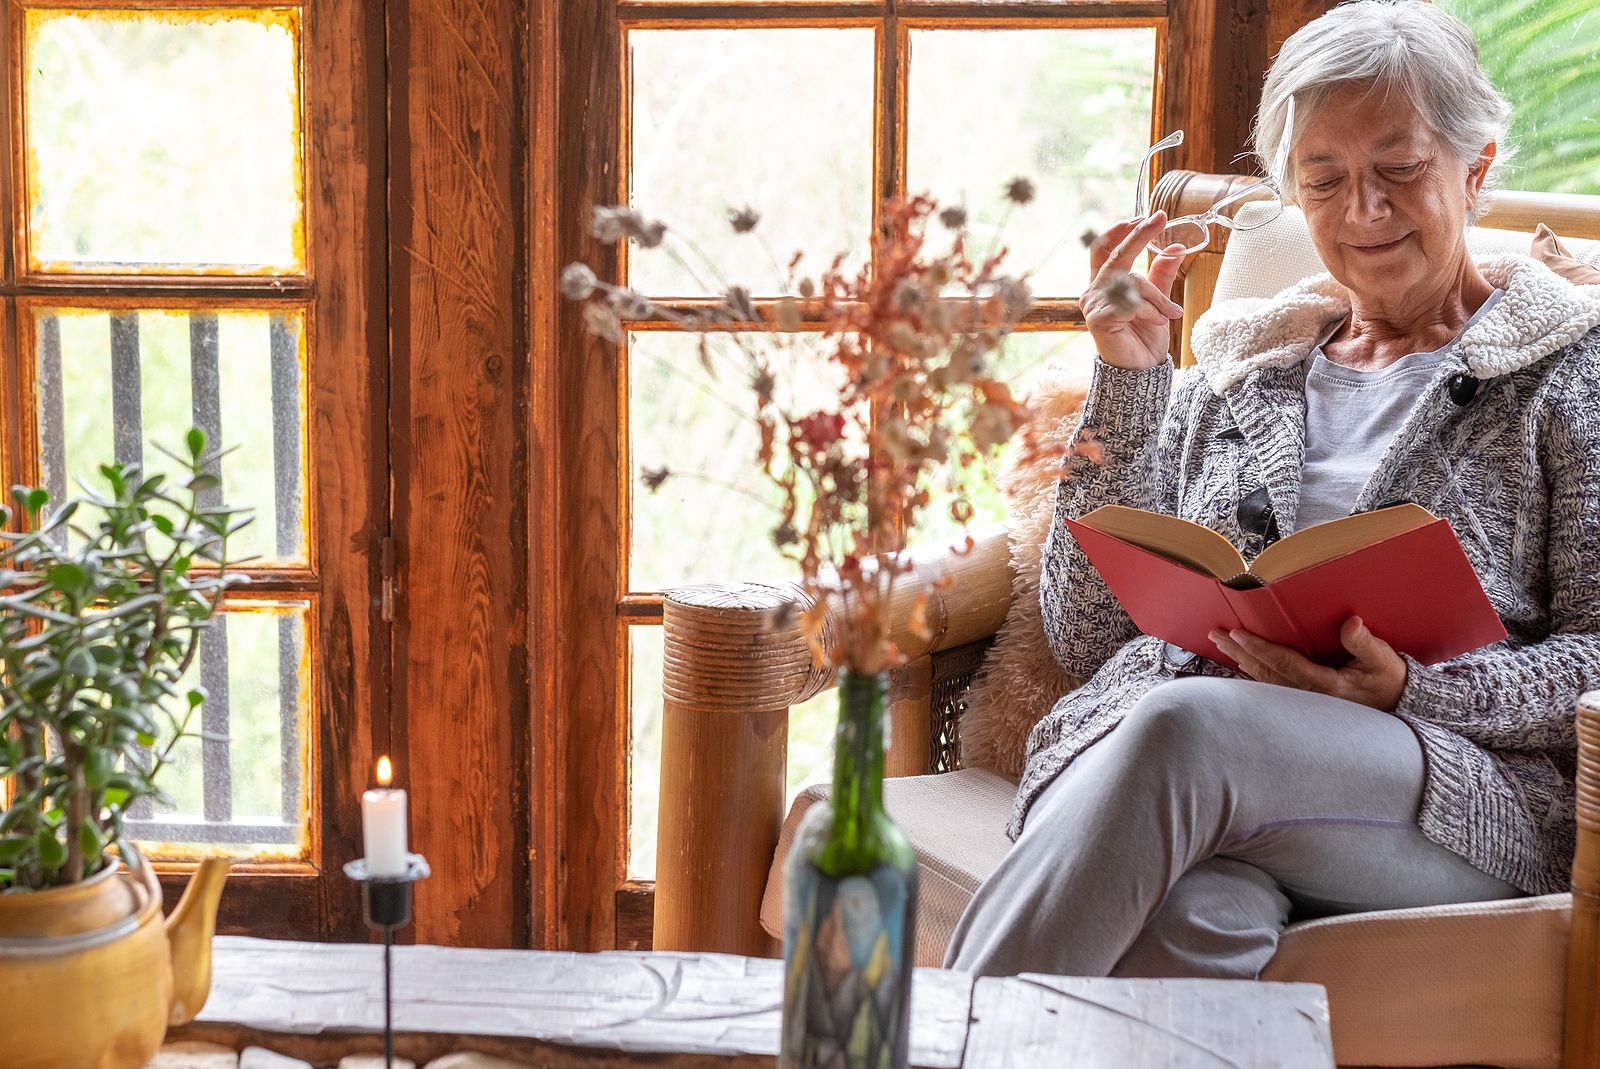 Los mayores de 55 años son los que más sienten que su hogar es un reflejo de su identidad. Foto: Bigstock